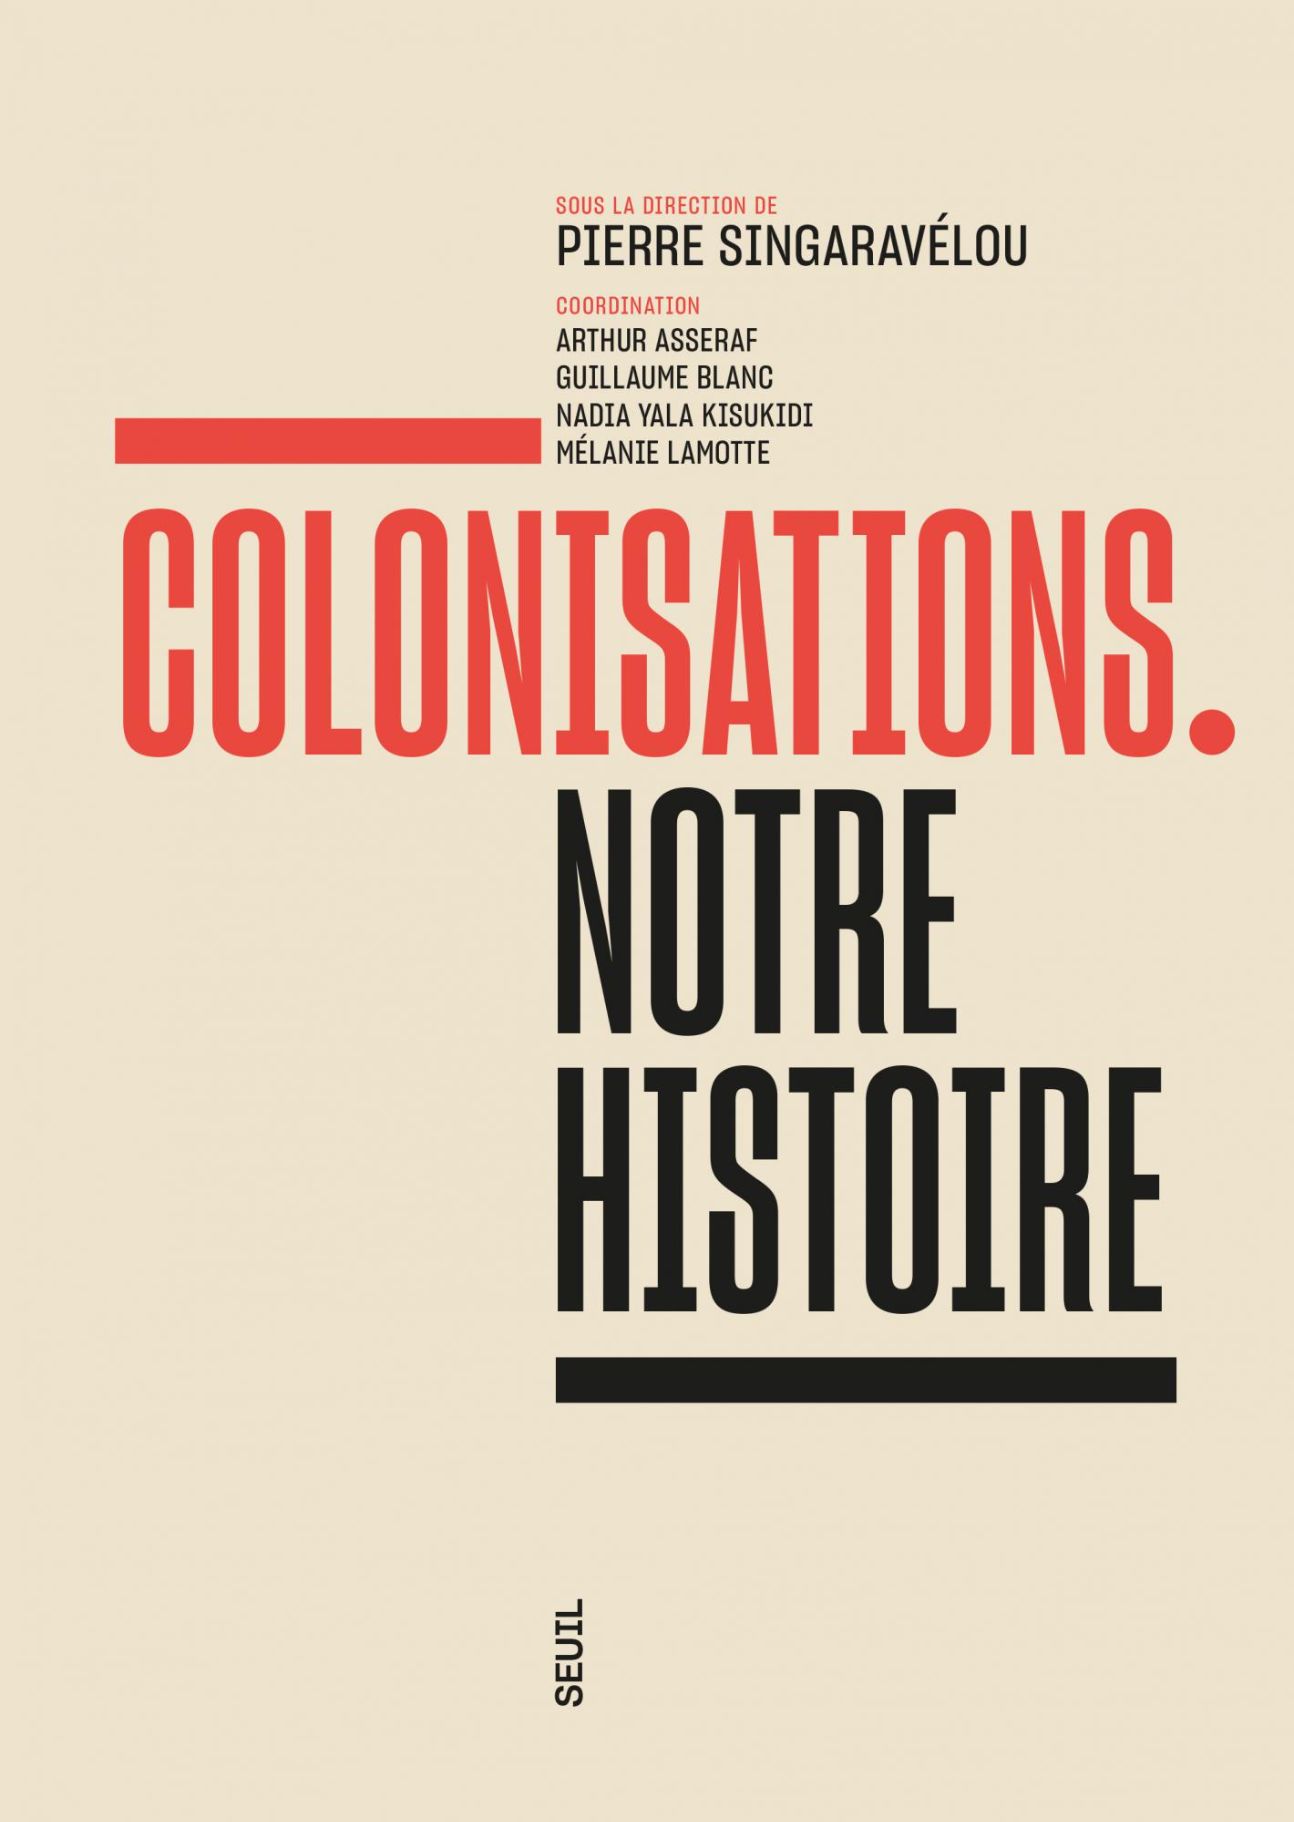 Pierre Singaravélou (dir.), Colonisations. Notre histoire